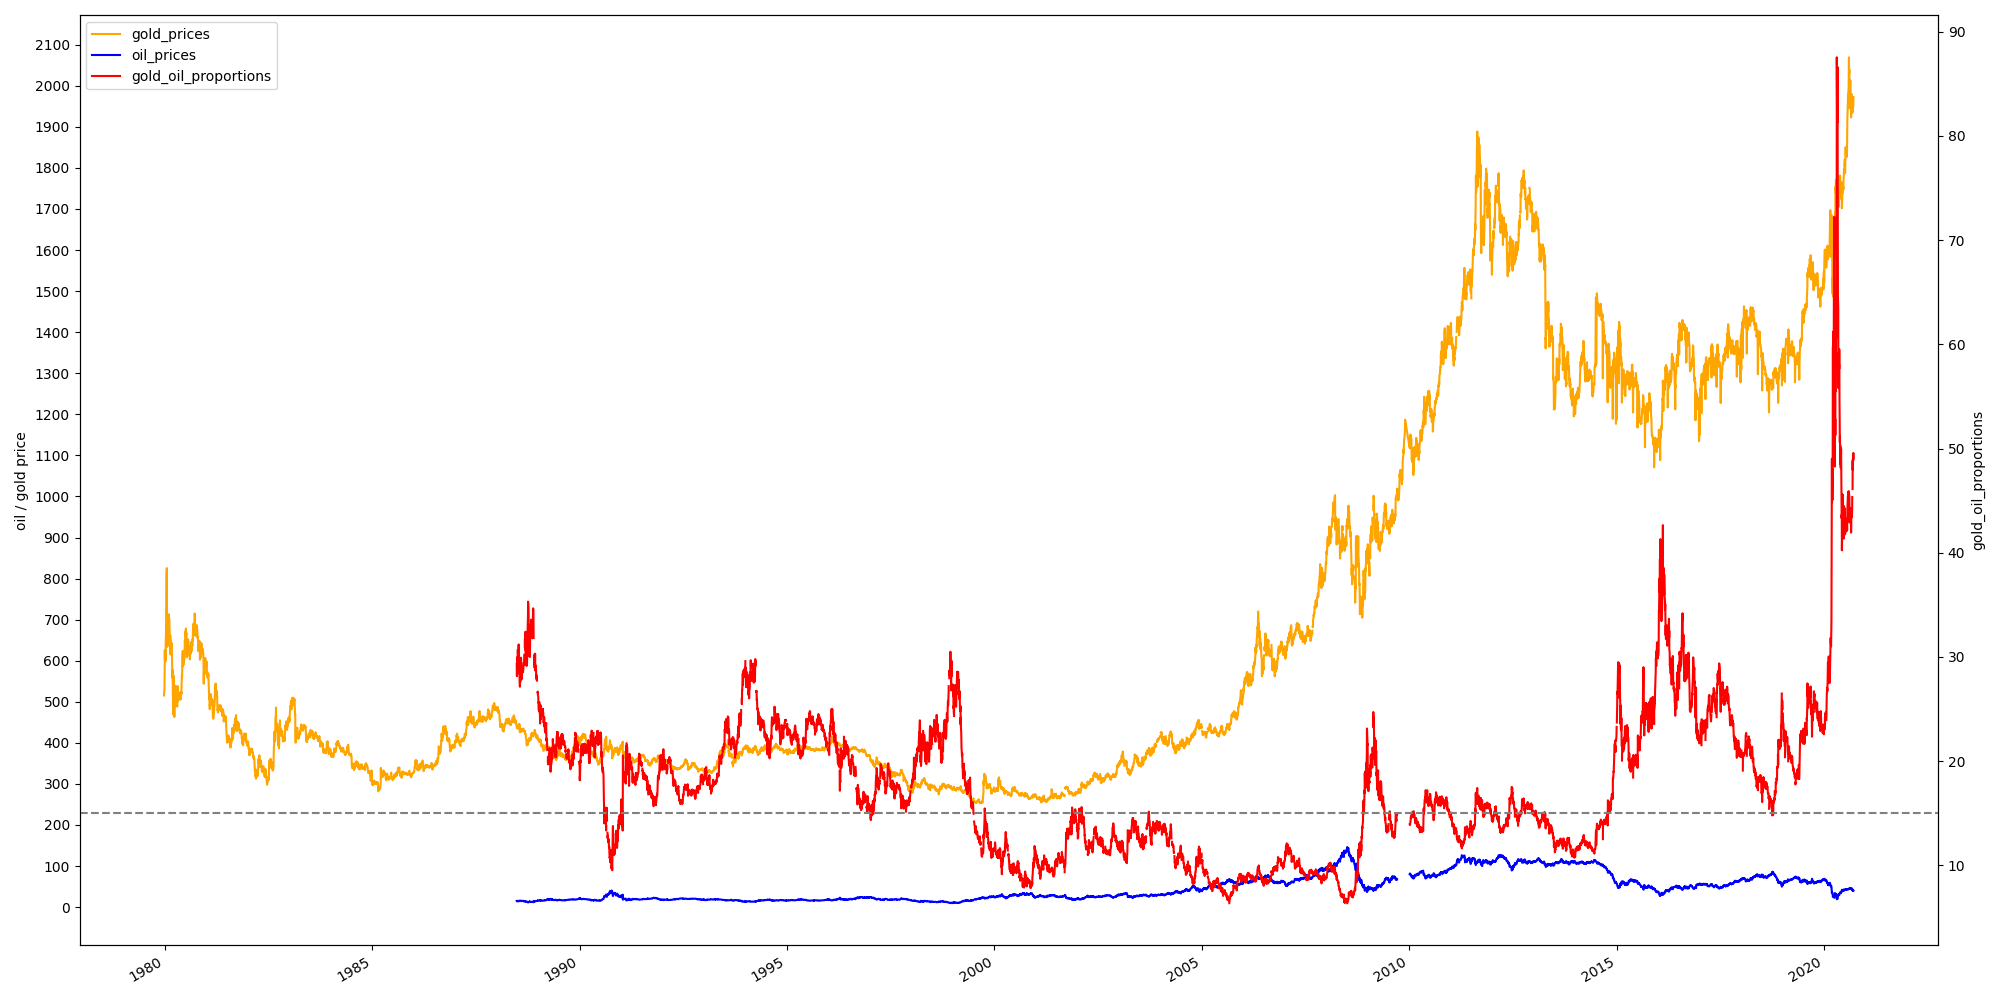 跑数据看一下，黄金价格和原油价格正相关吗？